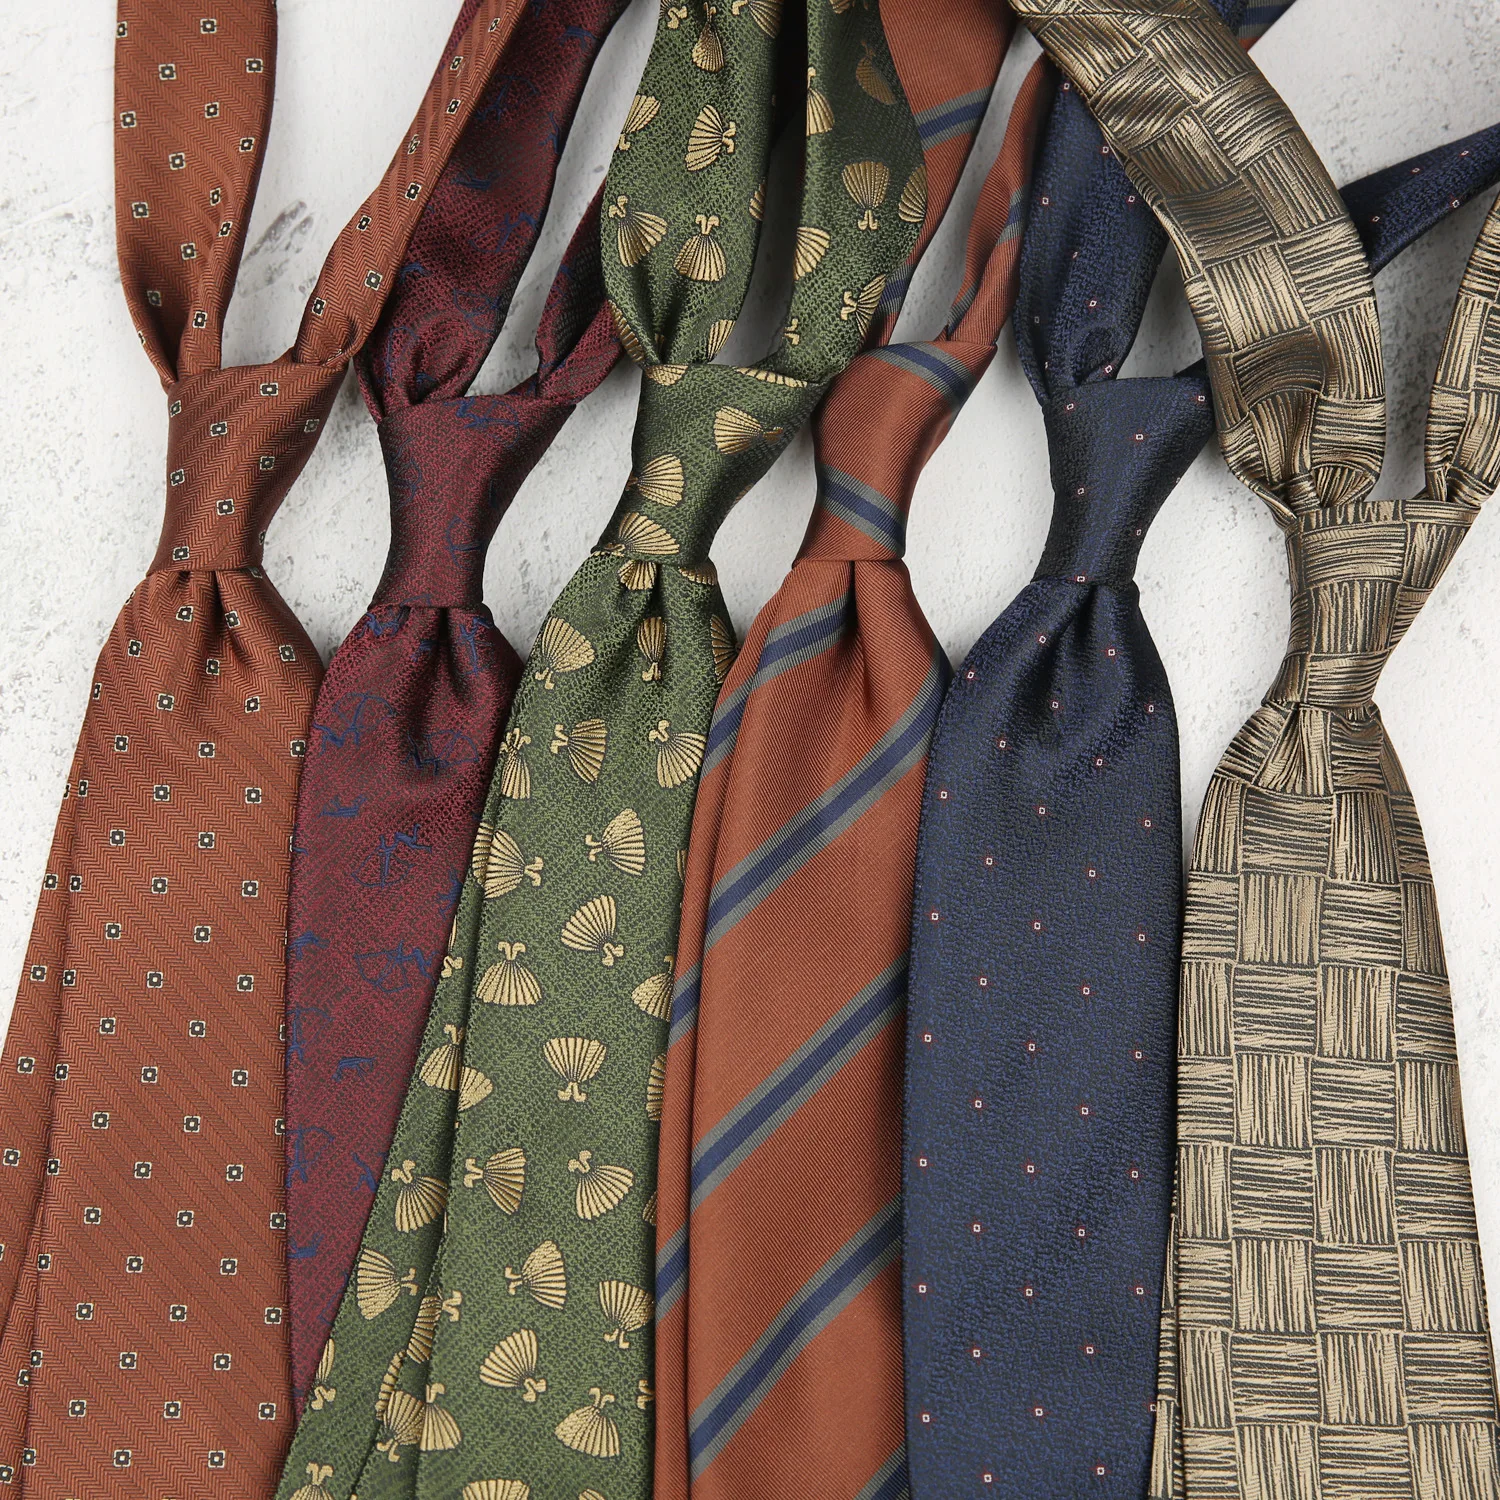 

Linbaiway Vintage Male Business Ties Necktie for Men's Wedding Party Gentlemen Gravatas Slim Neck Tie Texudos Cravats